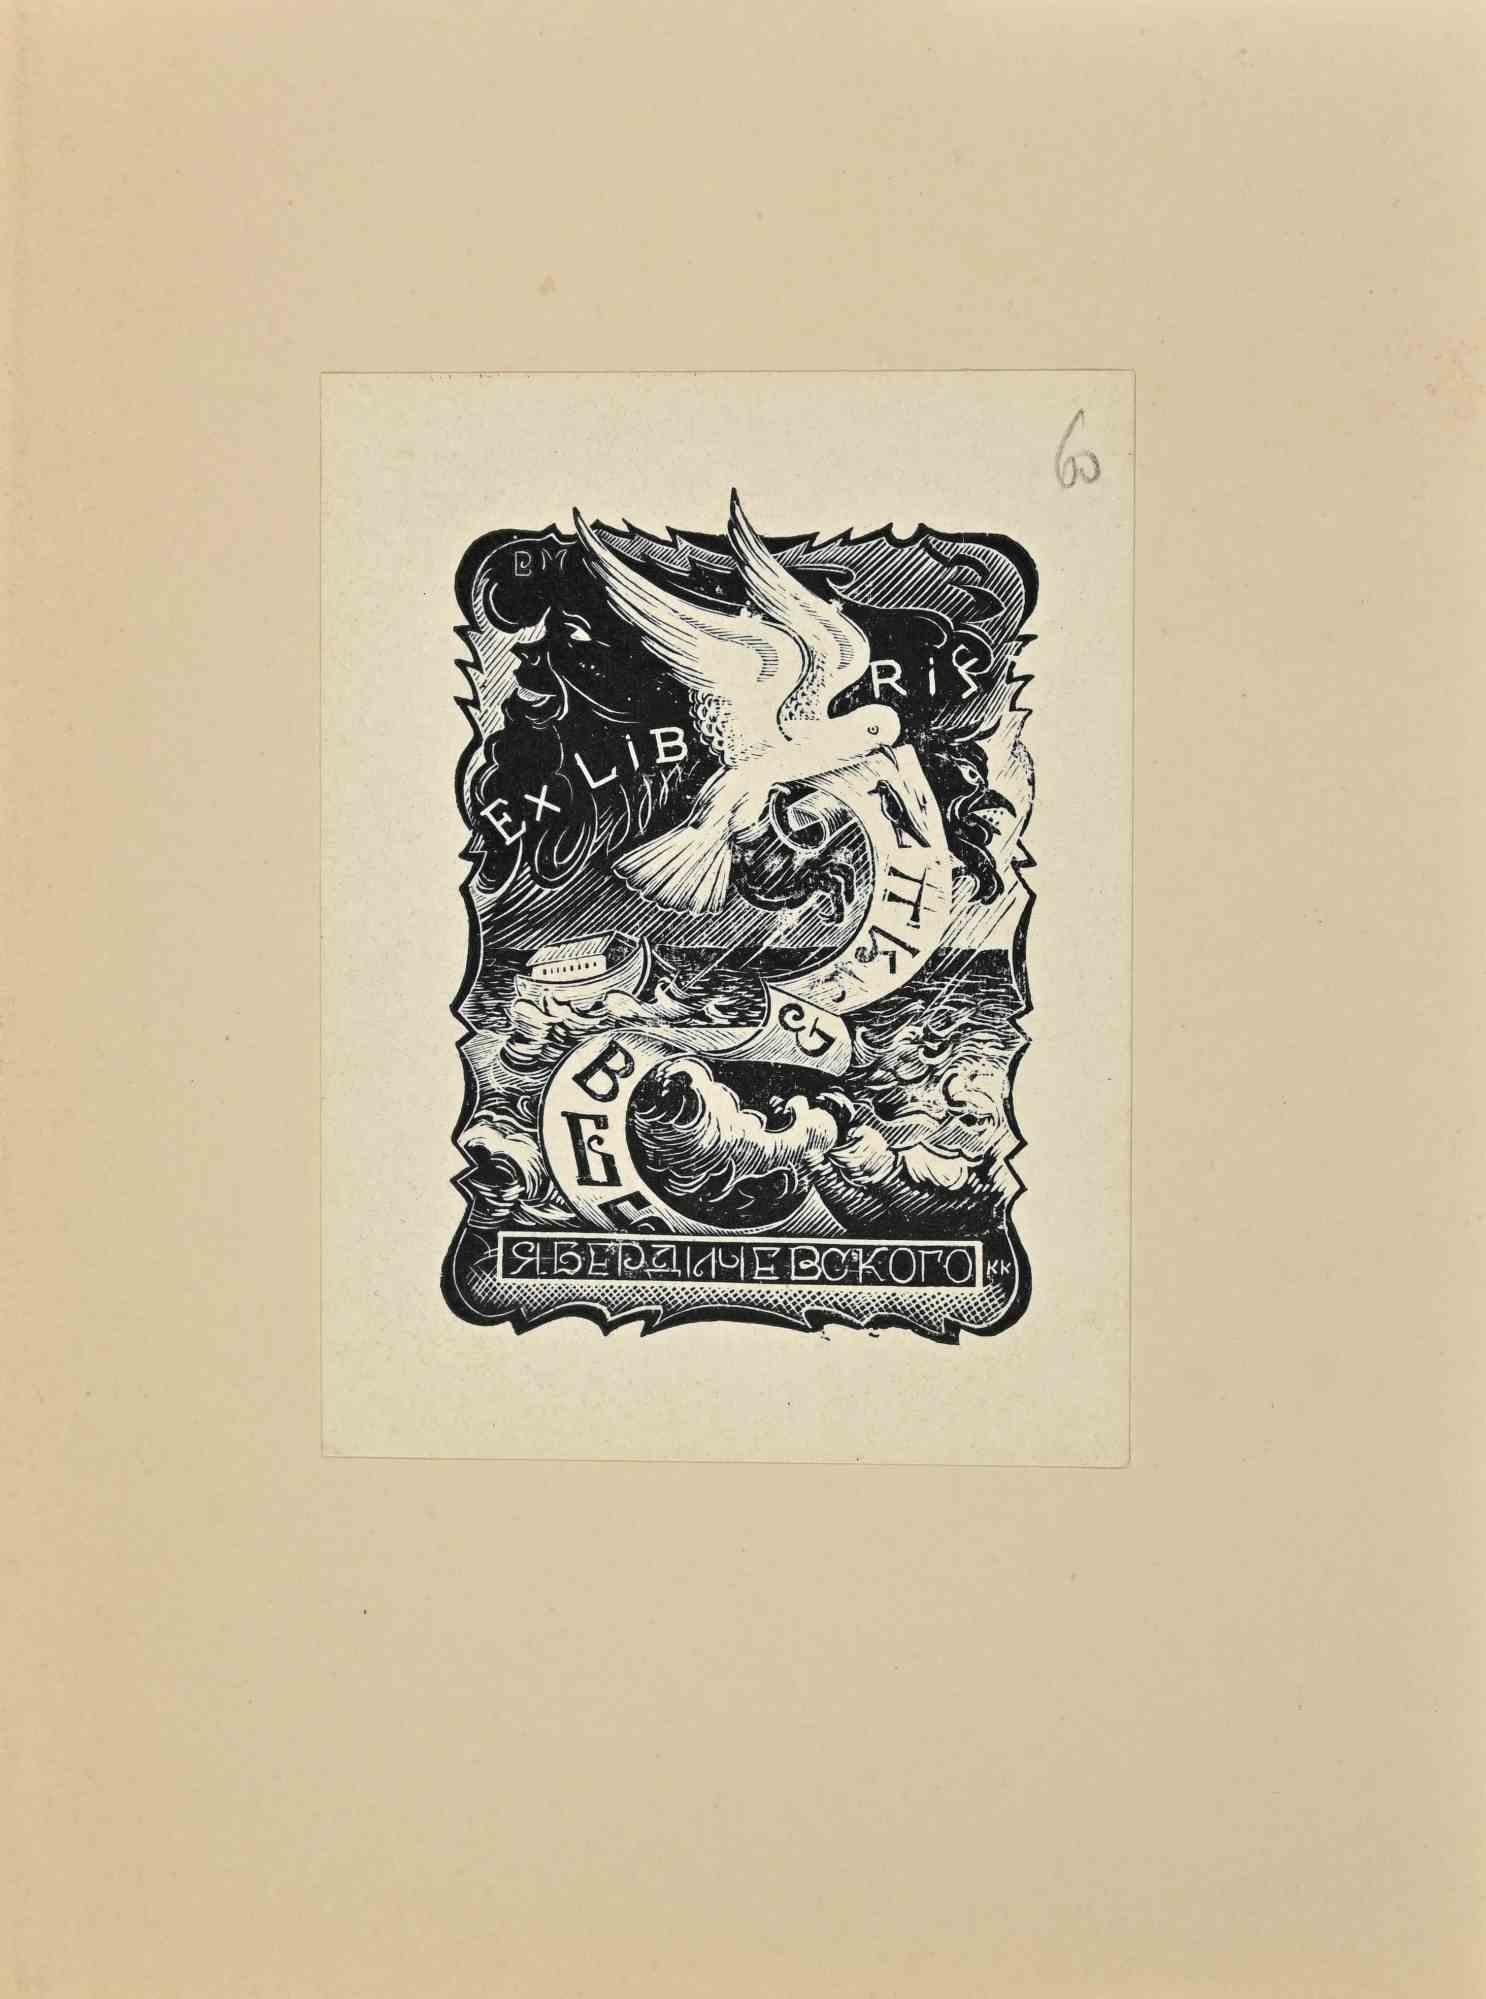 Ex Libris ist ein modernes Kunstwerk aus der Mitte des 20. Jahrhunderts von K.S. Kozlawskij.

Ex Libris. Holzschnitt auf Elfenbeinpapier. Handsigniert auf der Rückseite.

Das Werk ist auf Elfenbeinkarton geklebt

Abmessungen insgesamt: 20x 15